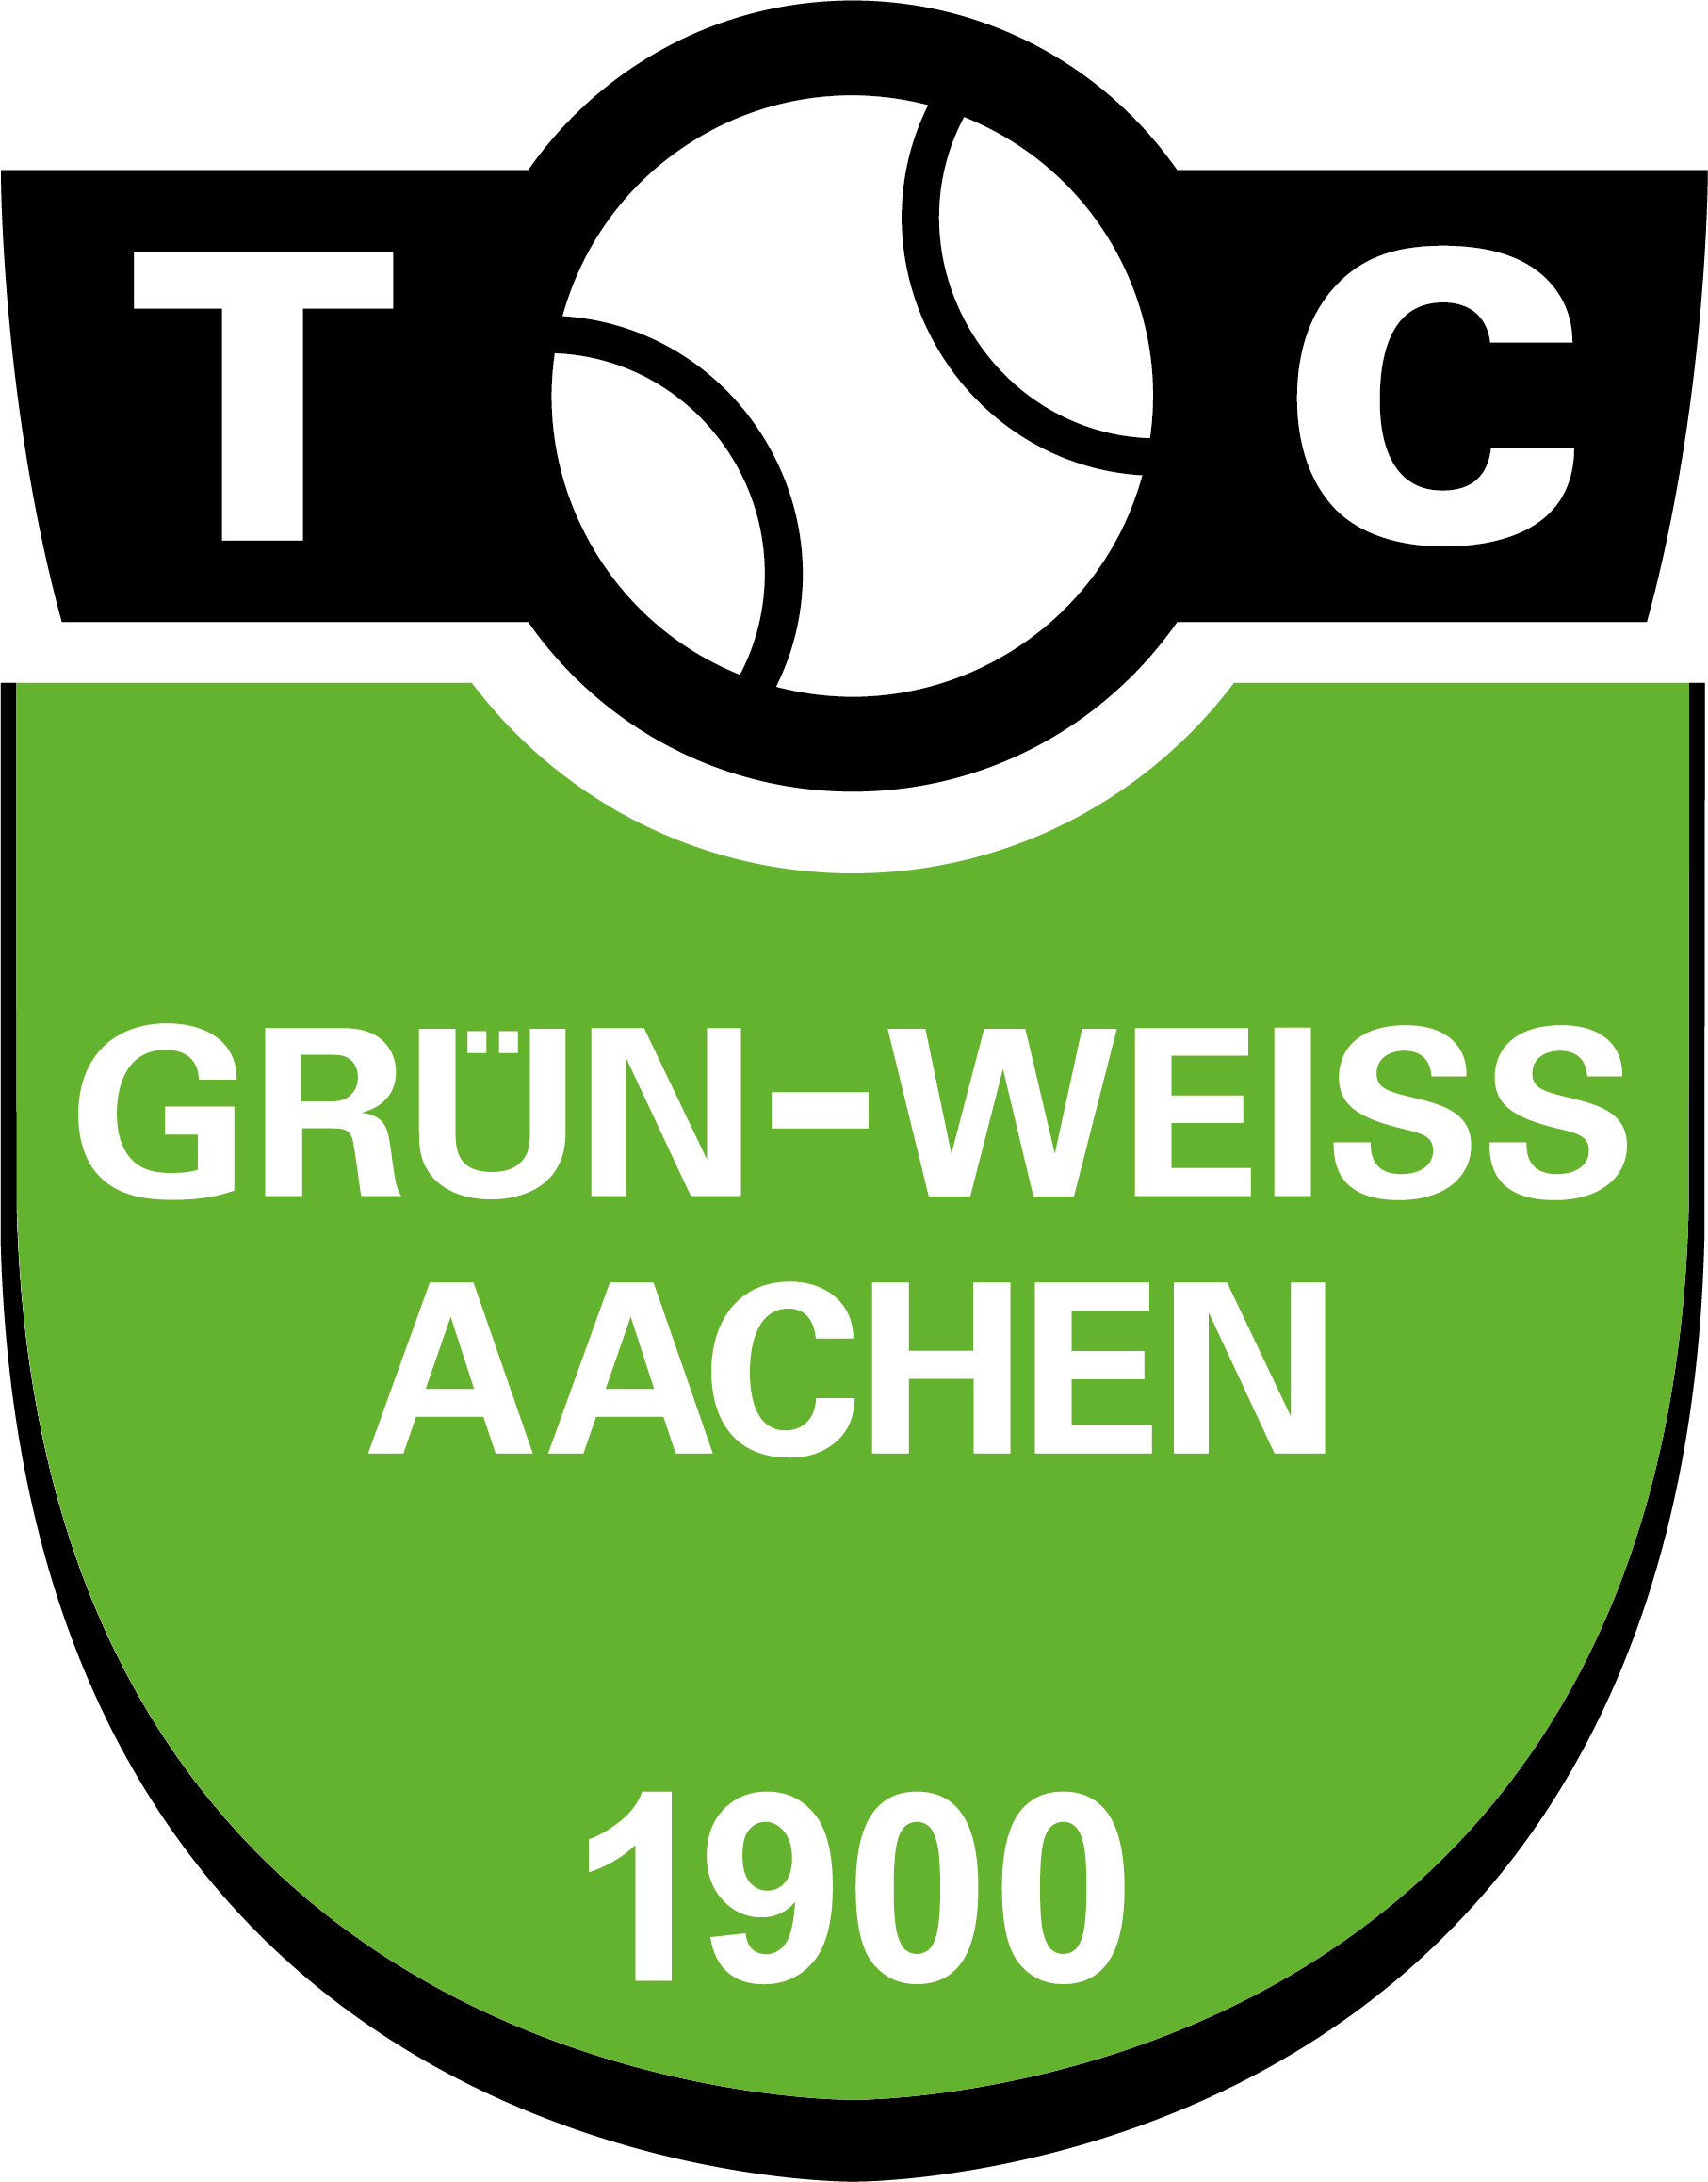 TC Gruen Weiss Aachen 1900 e.V.